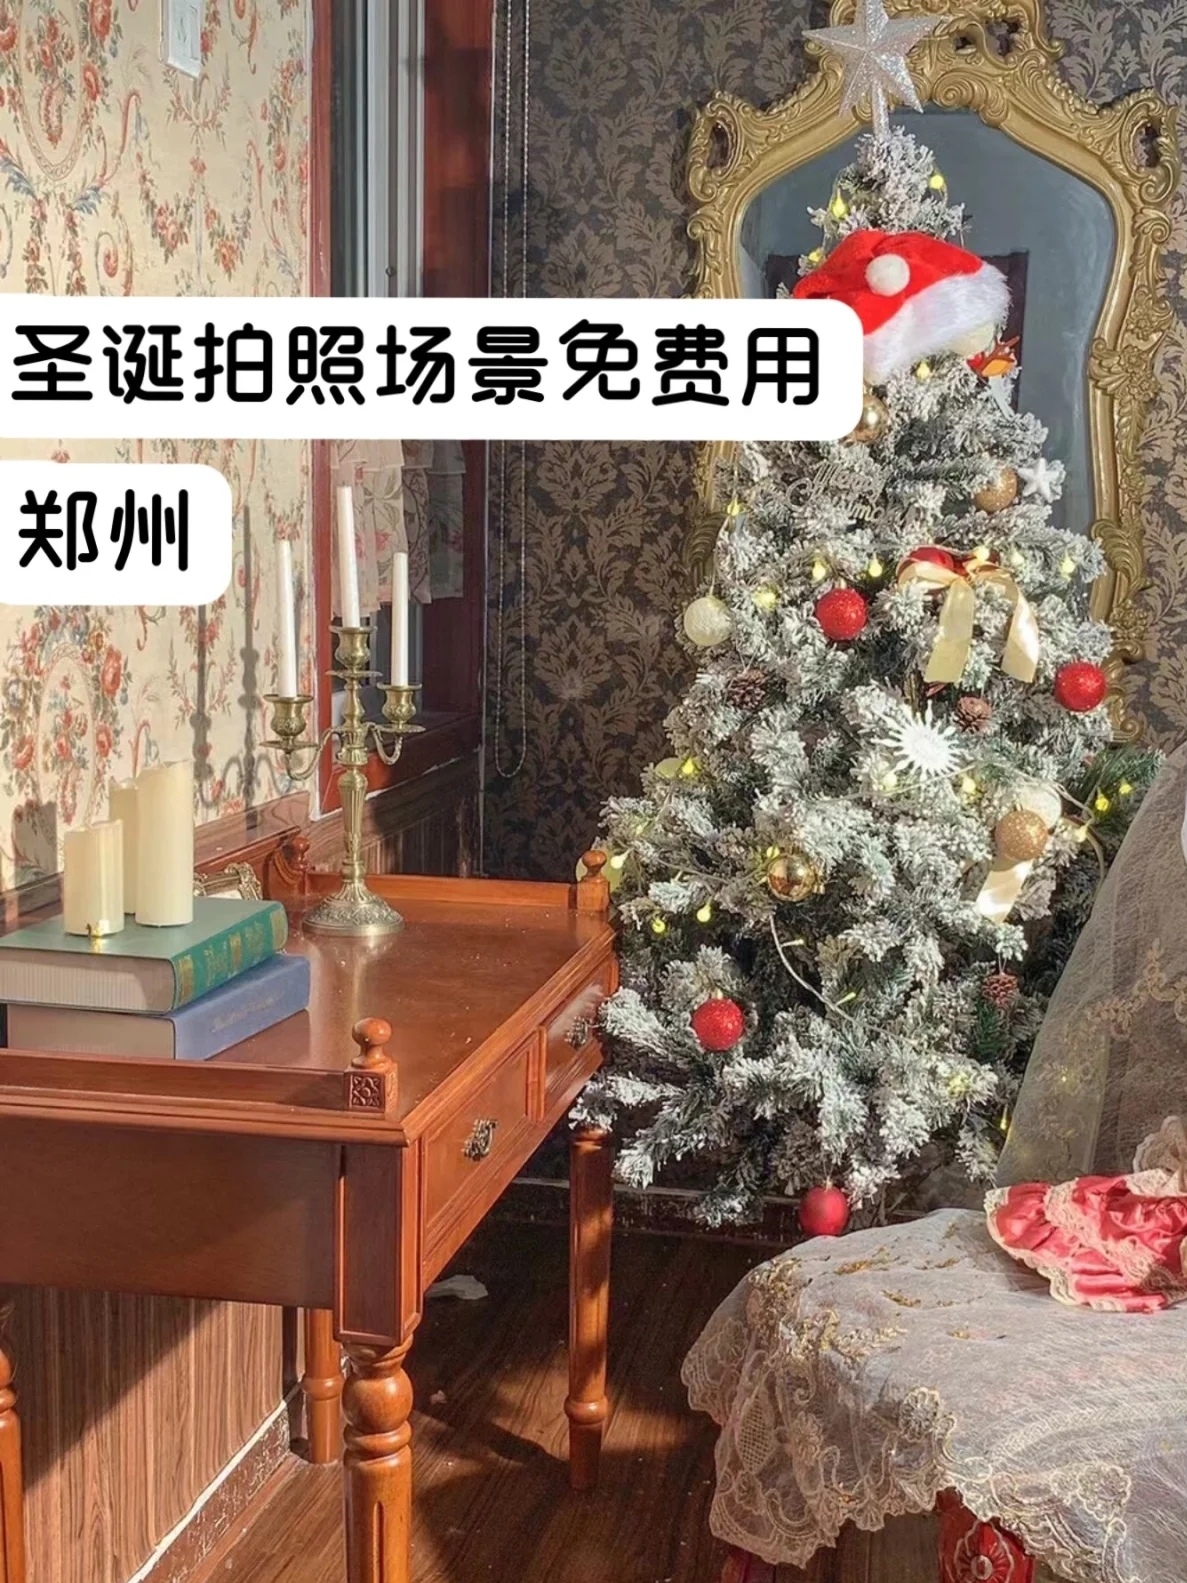 私藏的郑州圣诞拍照场景|摄影租棚